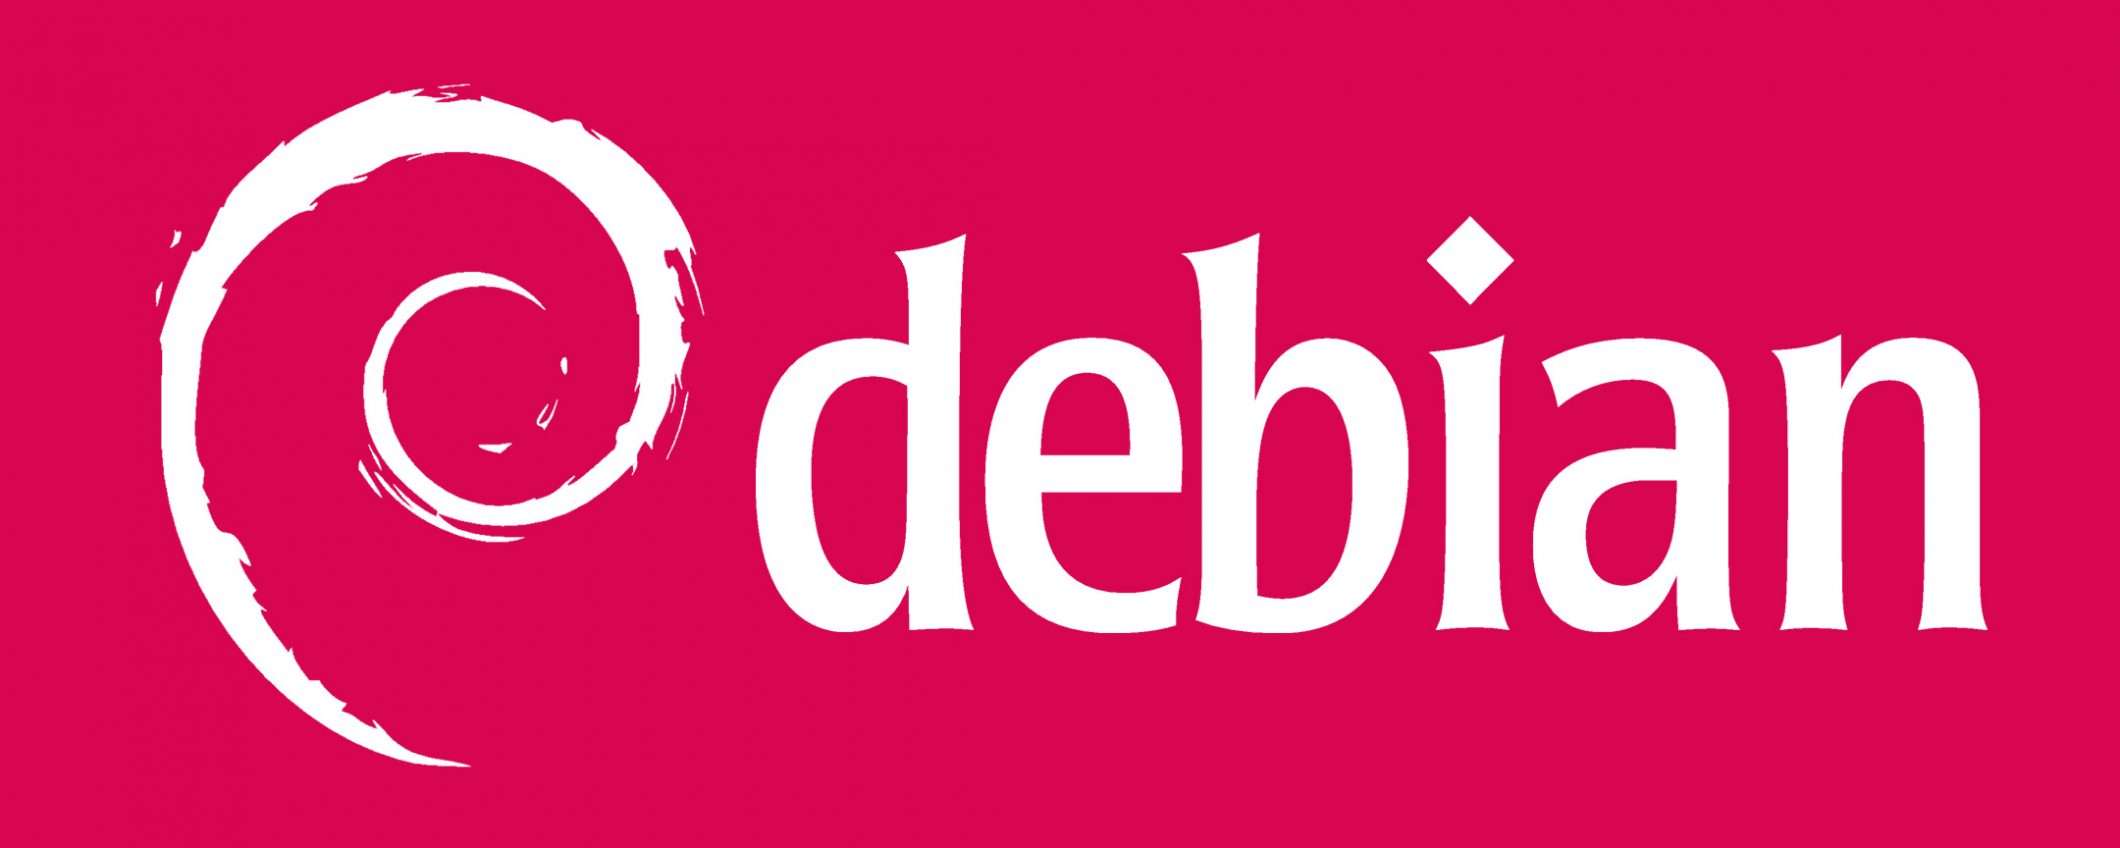 Linux: Debian si aggiorna alla nuova versione 10.8